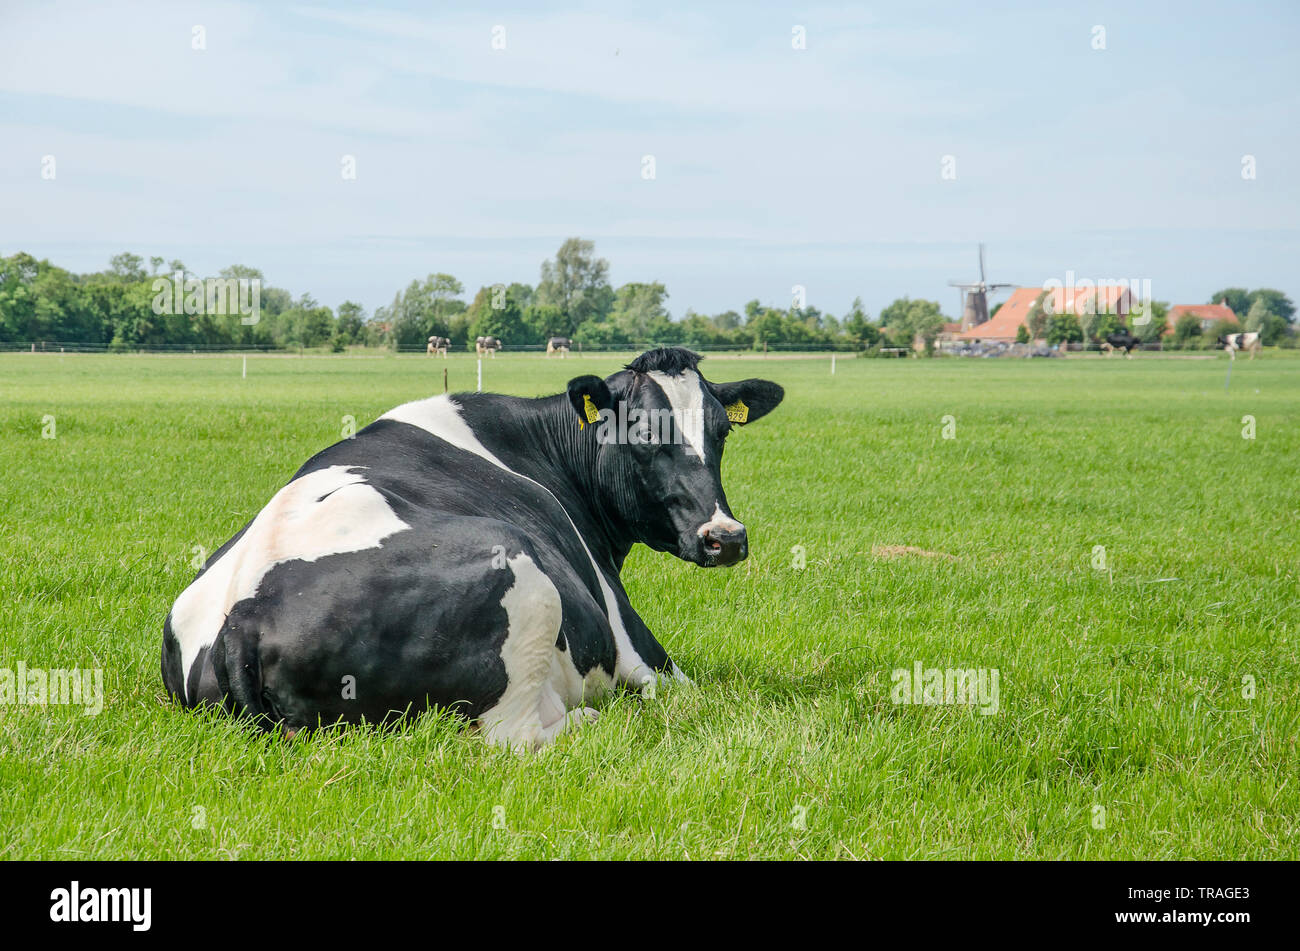 Portrai d'une vache noir et blanc se reposant dans un pré dans un paysage rural avec une ferme, arbres et un moulin à vent sur l'île de Walcheren, le Netherland Banque D'Images